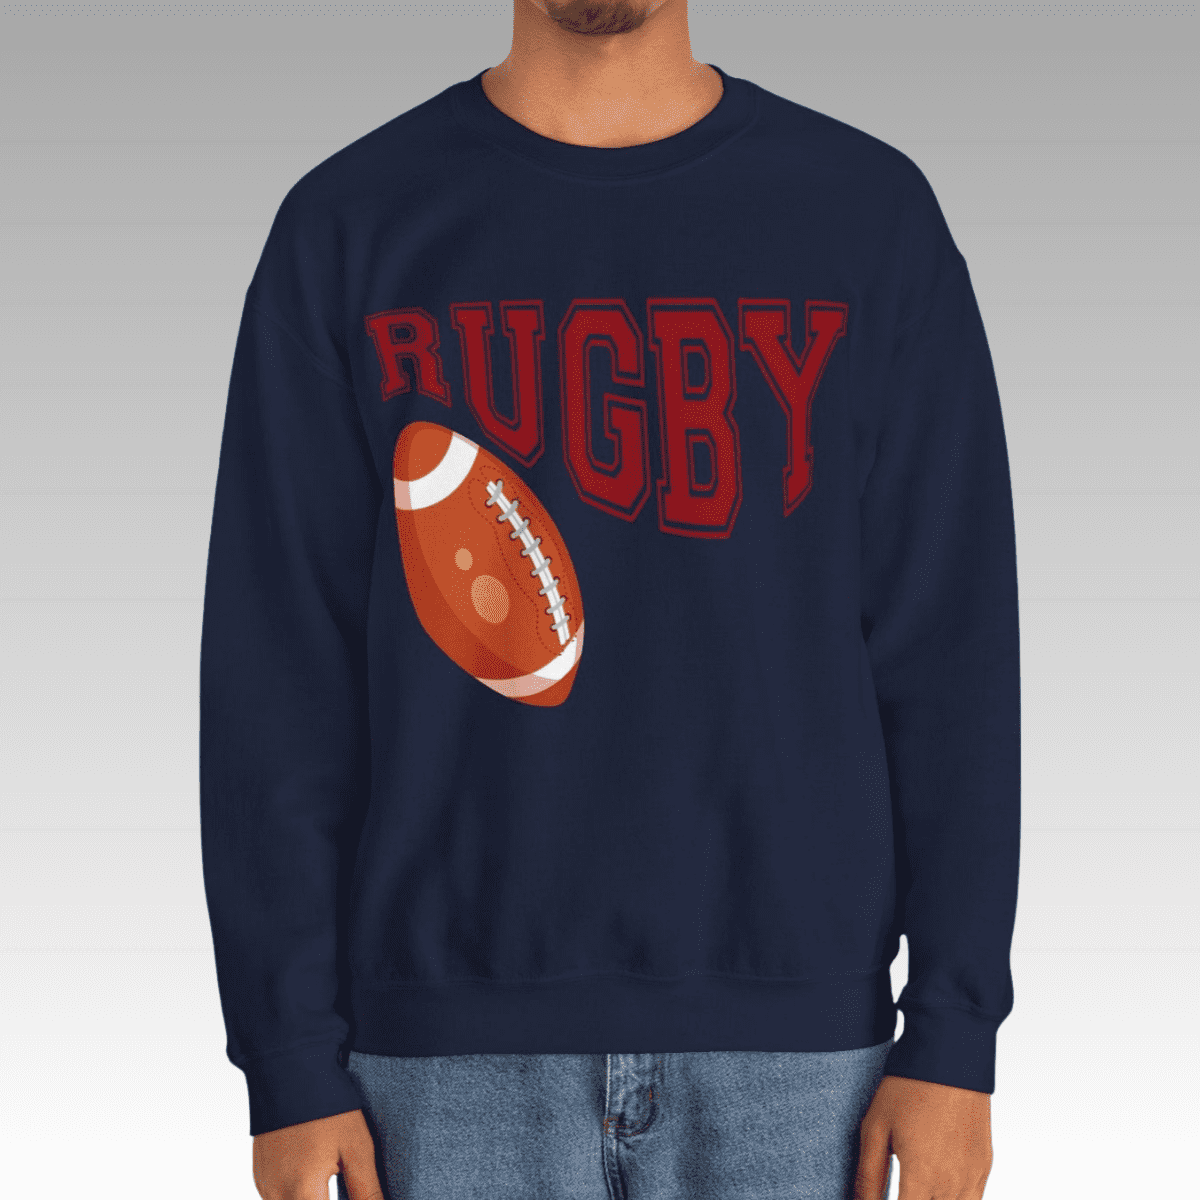 Navy Men's Rugby Heavy Blend Sweatshirt